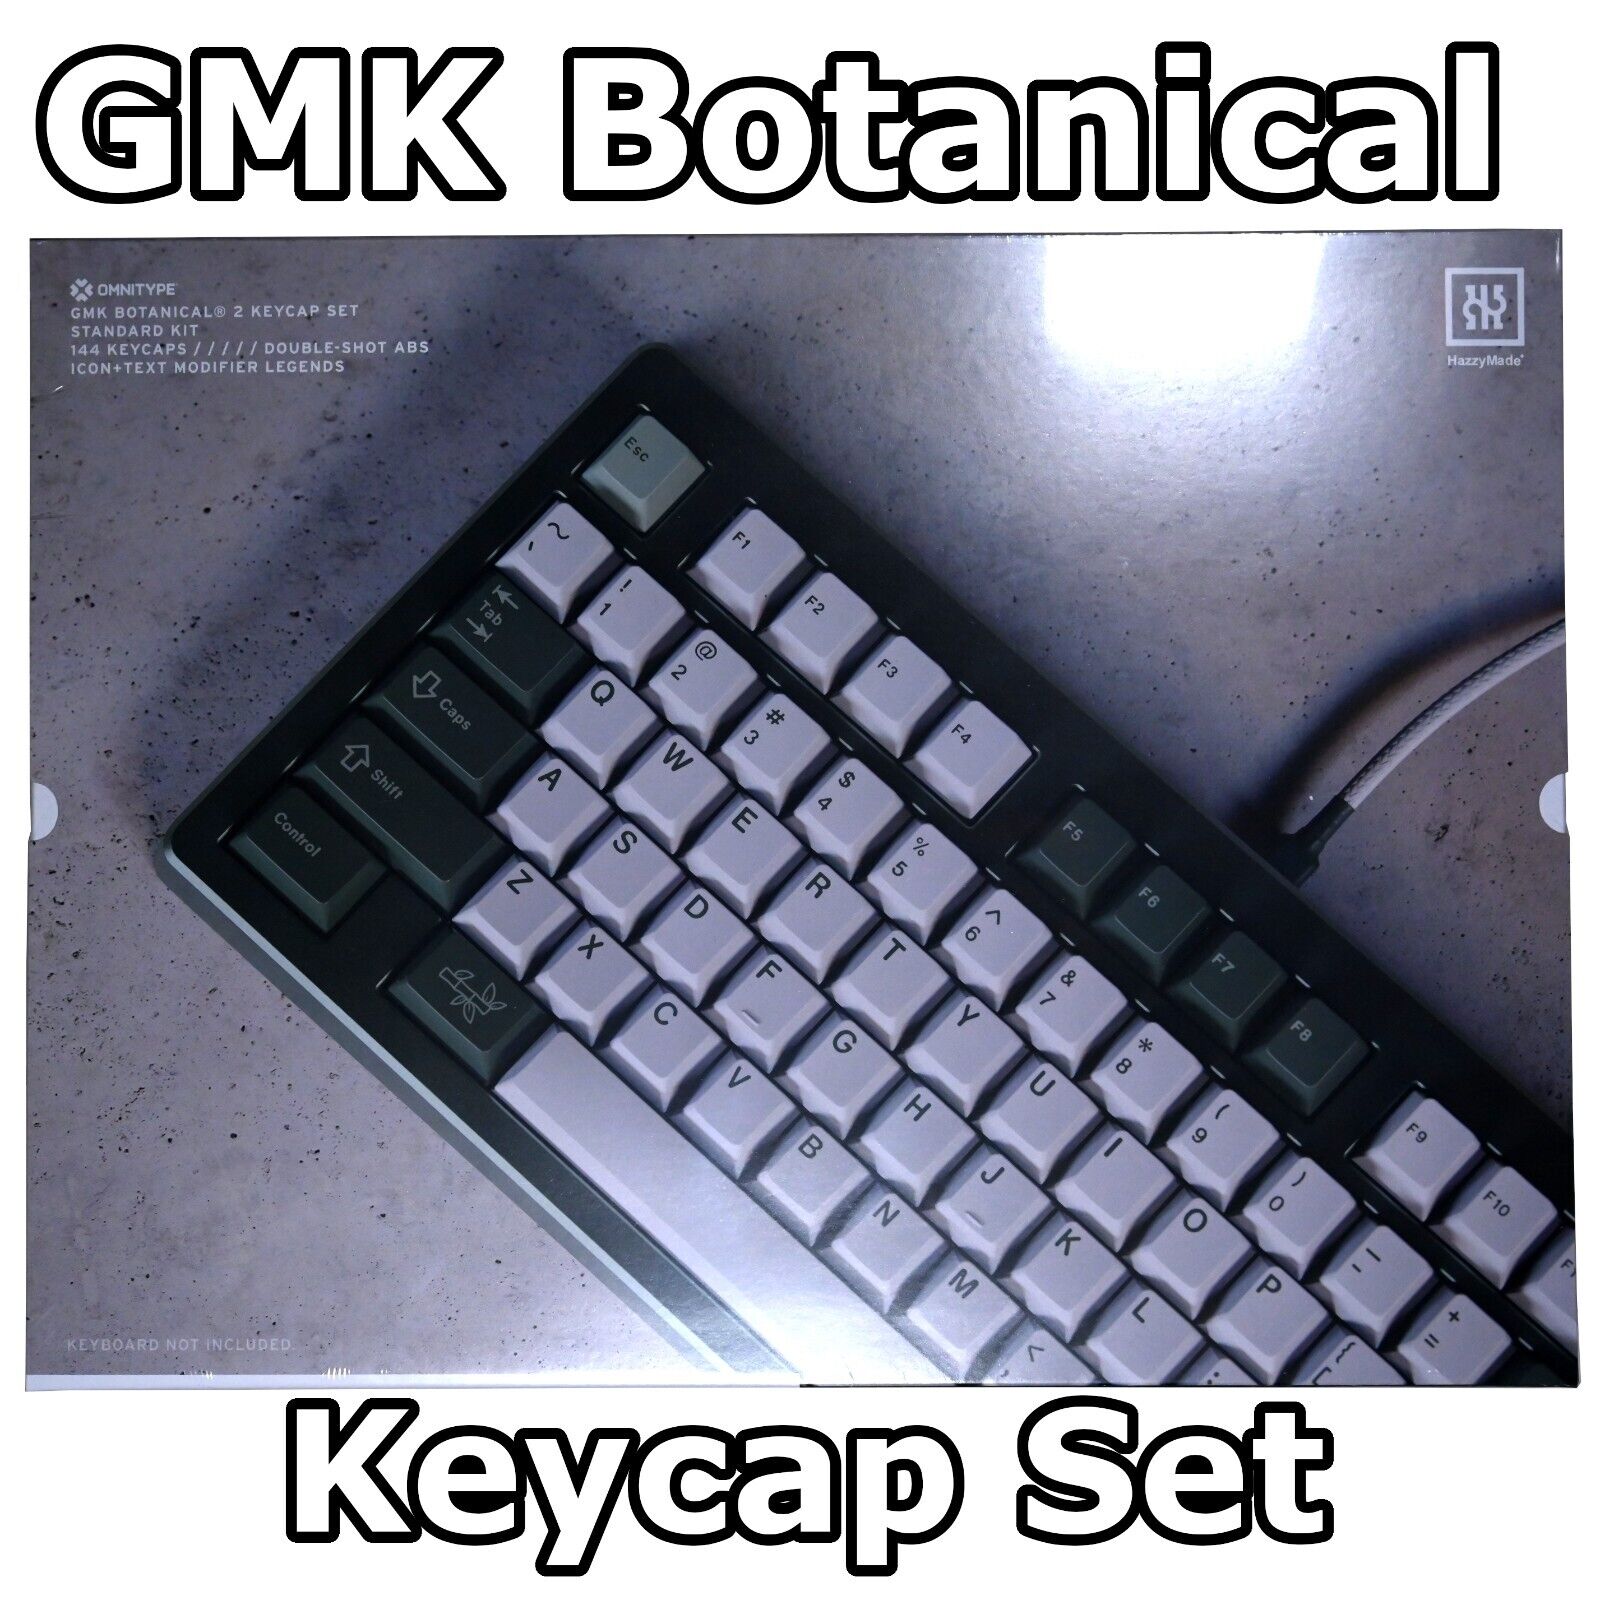 GMK Botanical R2 SEALED Base Keycap SET - Double Shot ABS Keycaps For Keyboards